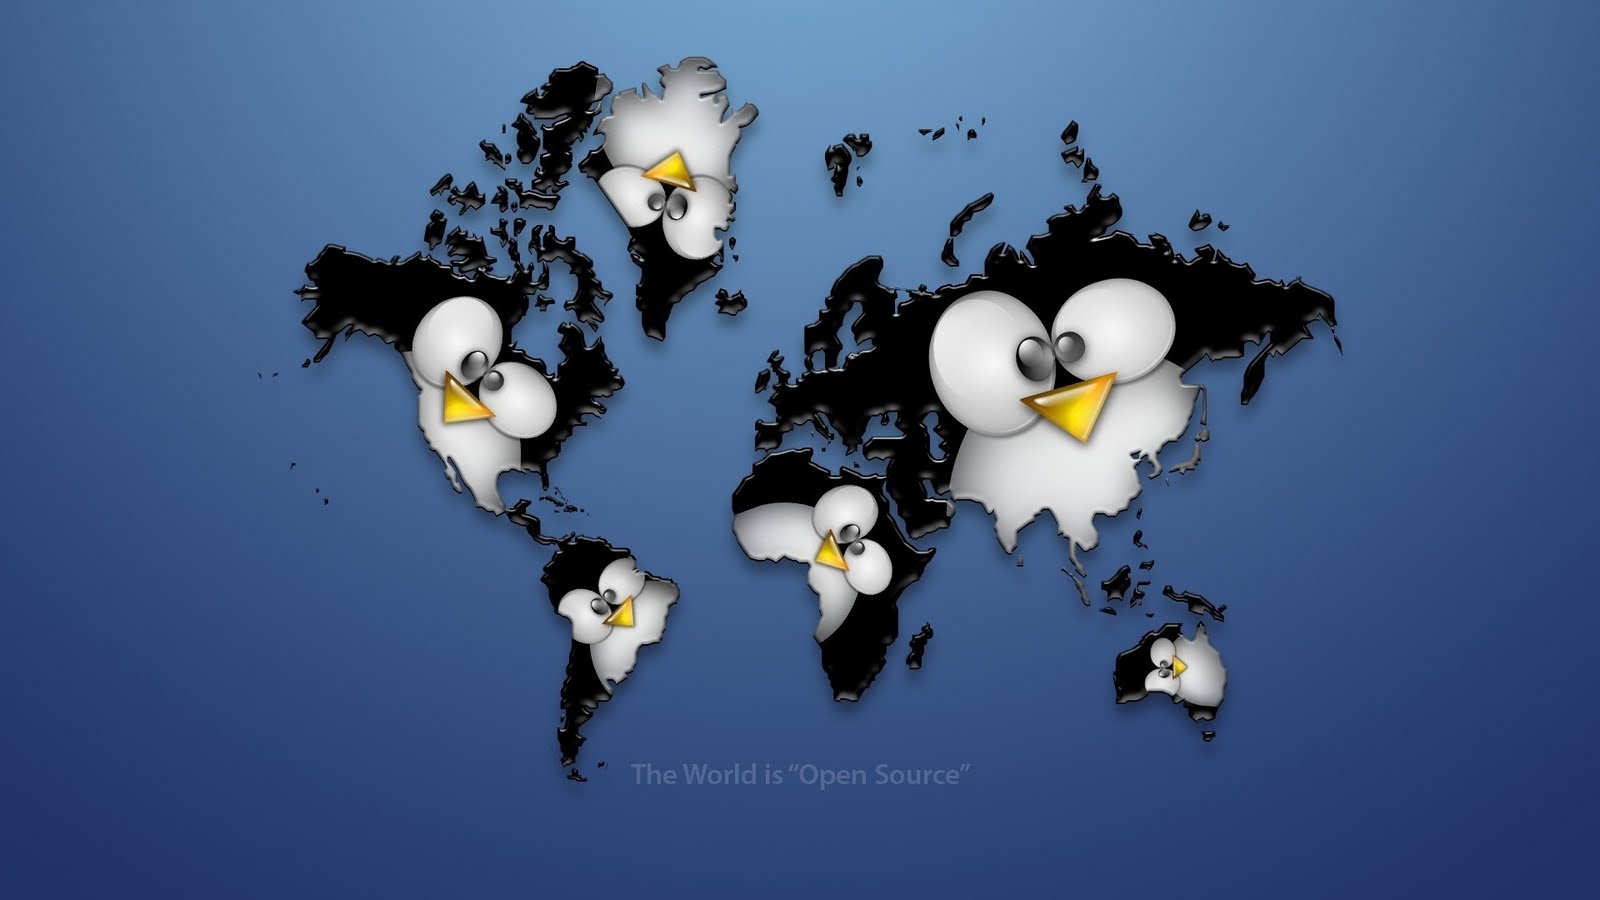 linux desktop wallpaper,bird,flightless bird,beak